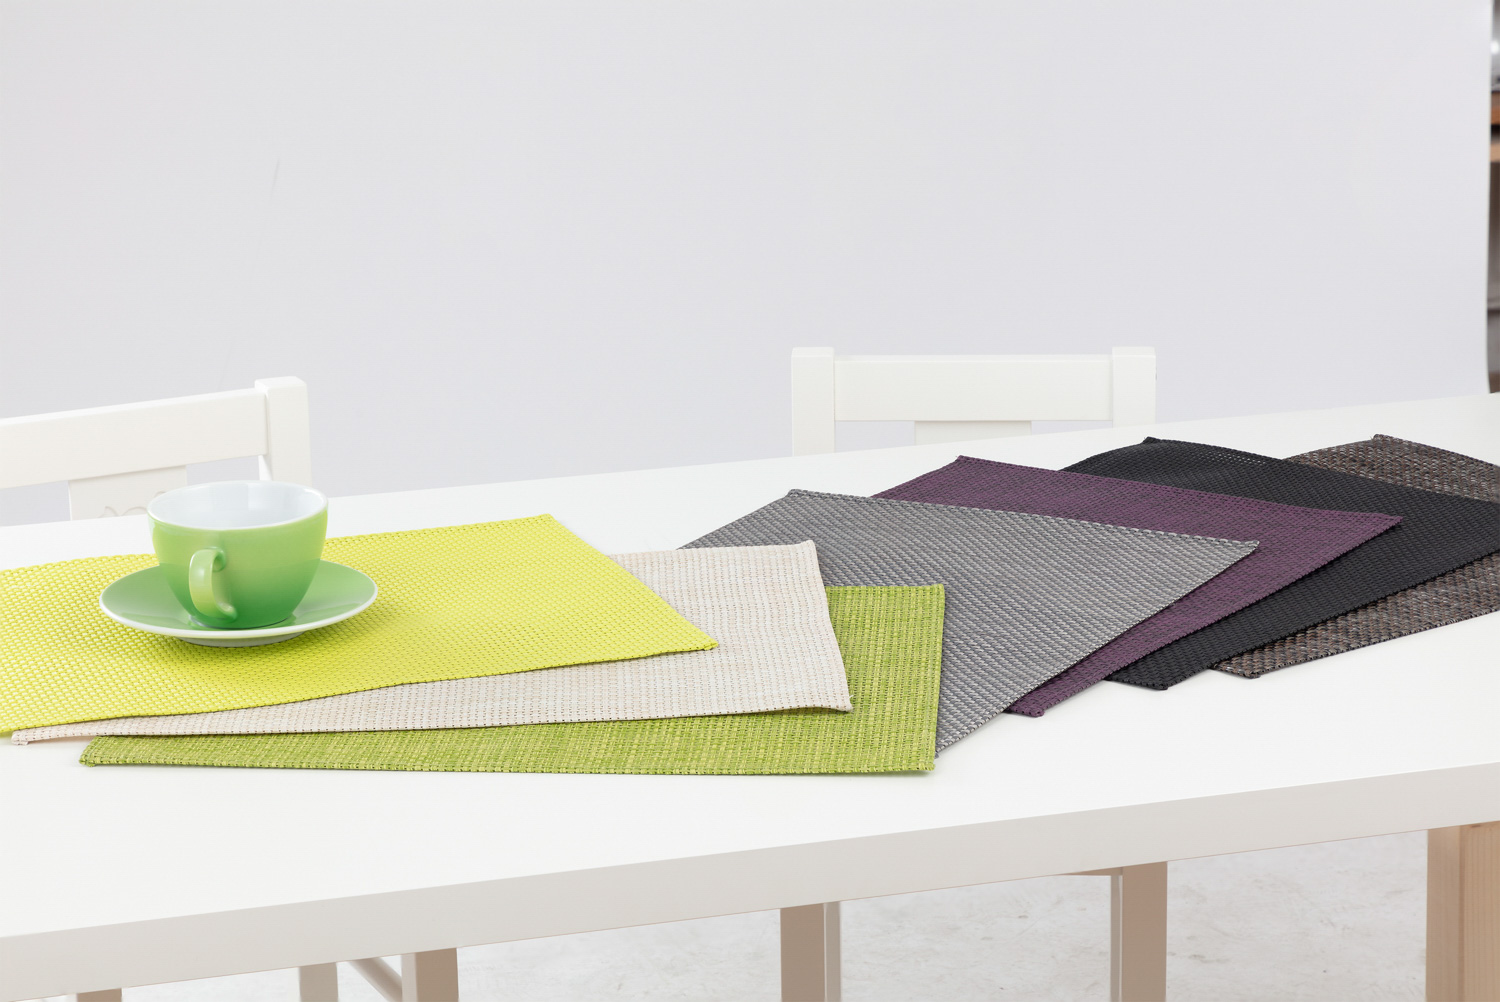 APS Tischset HIVA, Farbe: grün, Größe: 45 x 33 cm, PVC, Schmalband